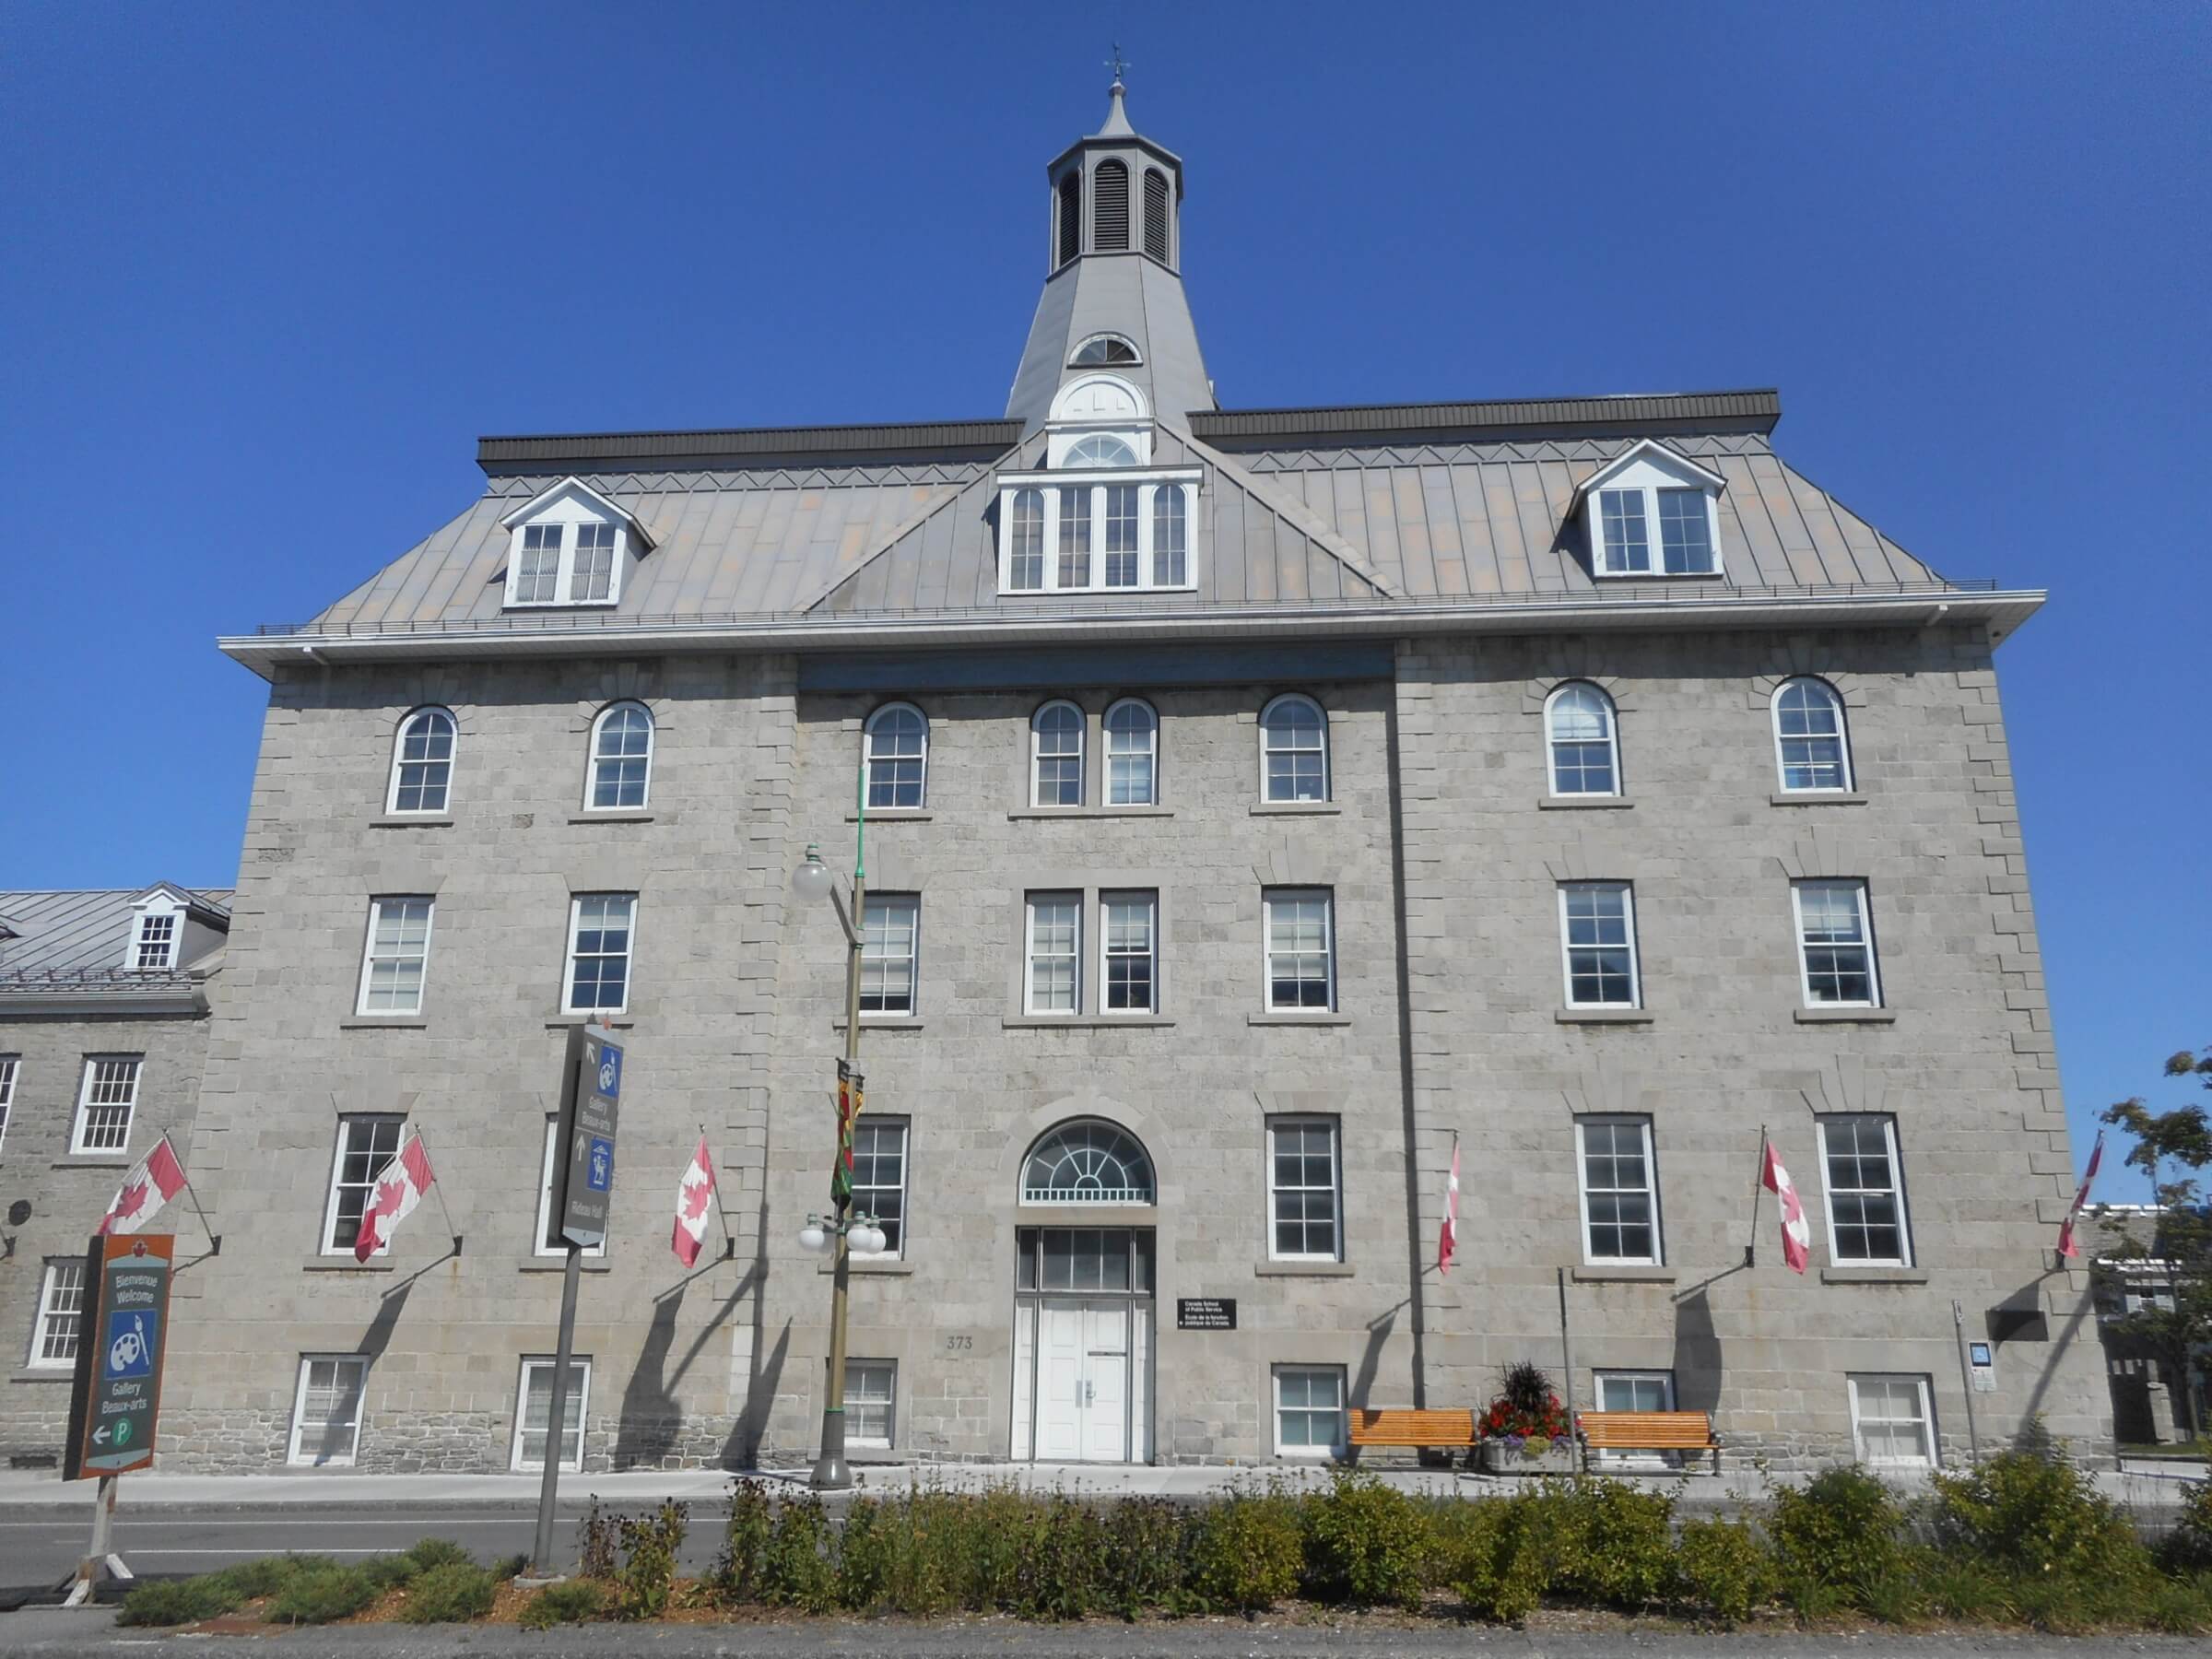 The Canada School of Public Service campus